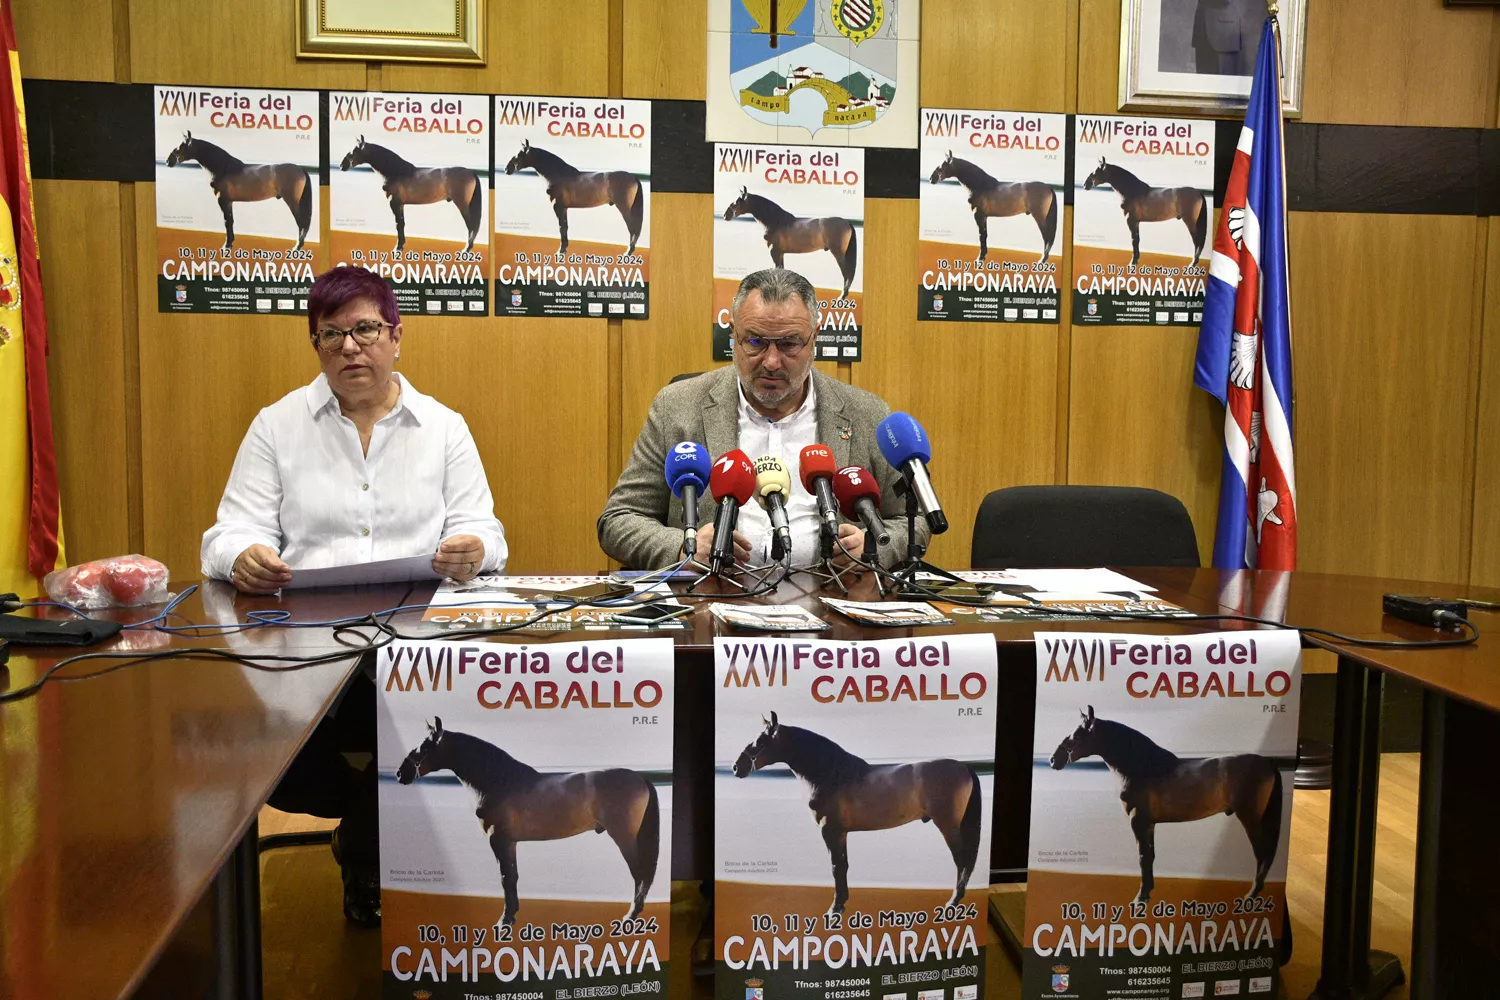 Camponaraya 'cabalga' hacia la XXVI Feria del Caballo con la participación de 14 ganaderías